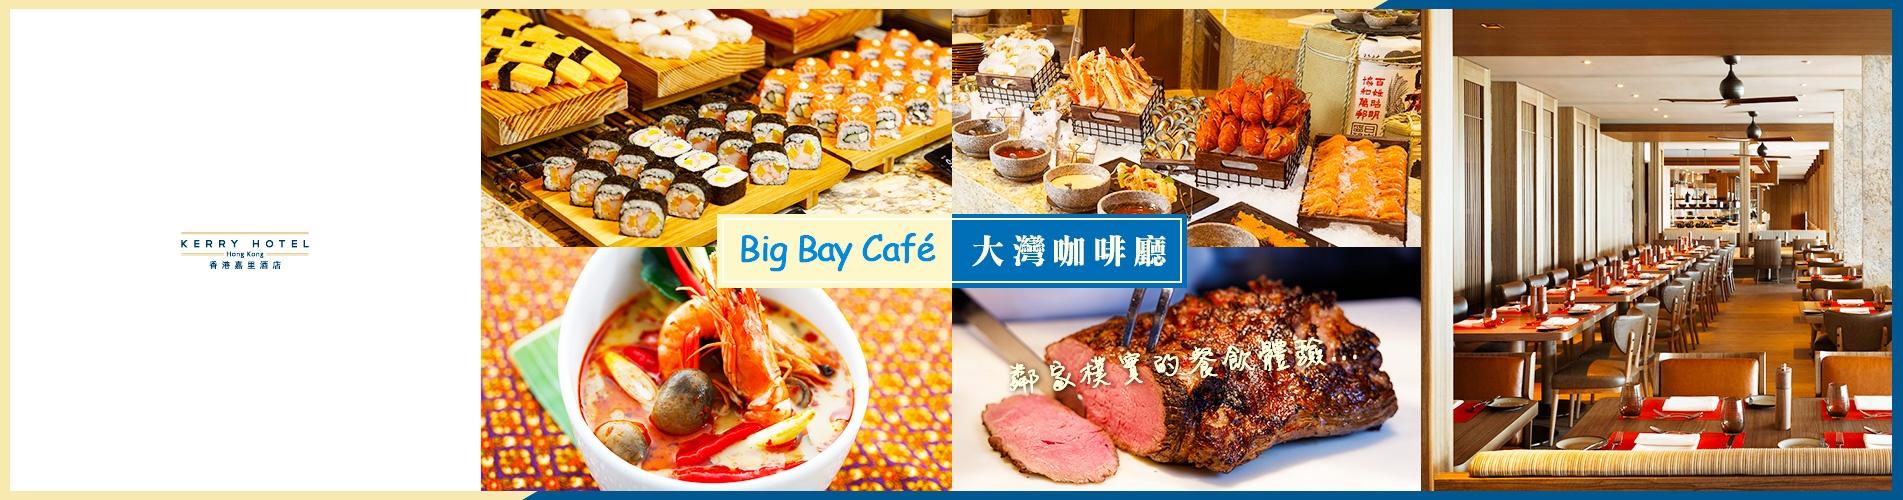 香港嘉里酒店「大灣咖啡廳」自助餐